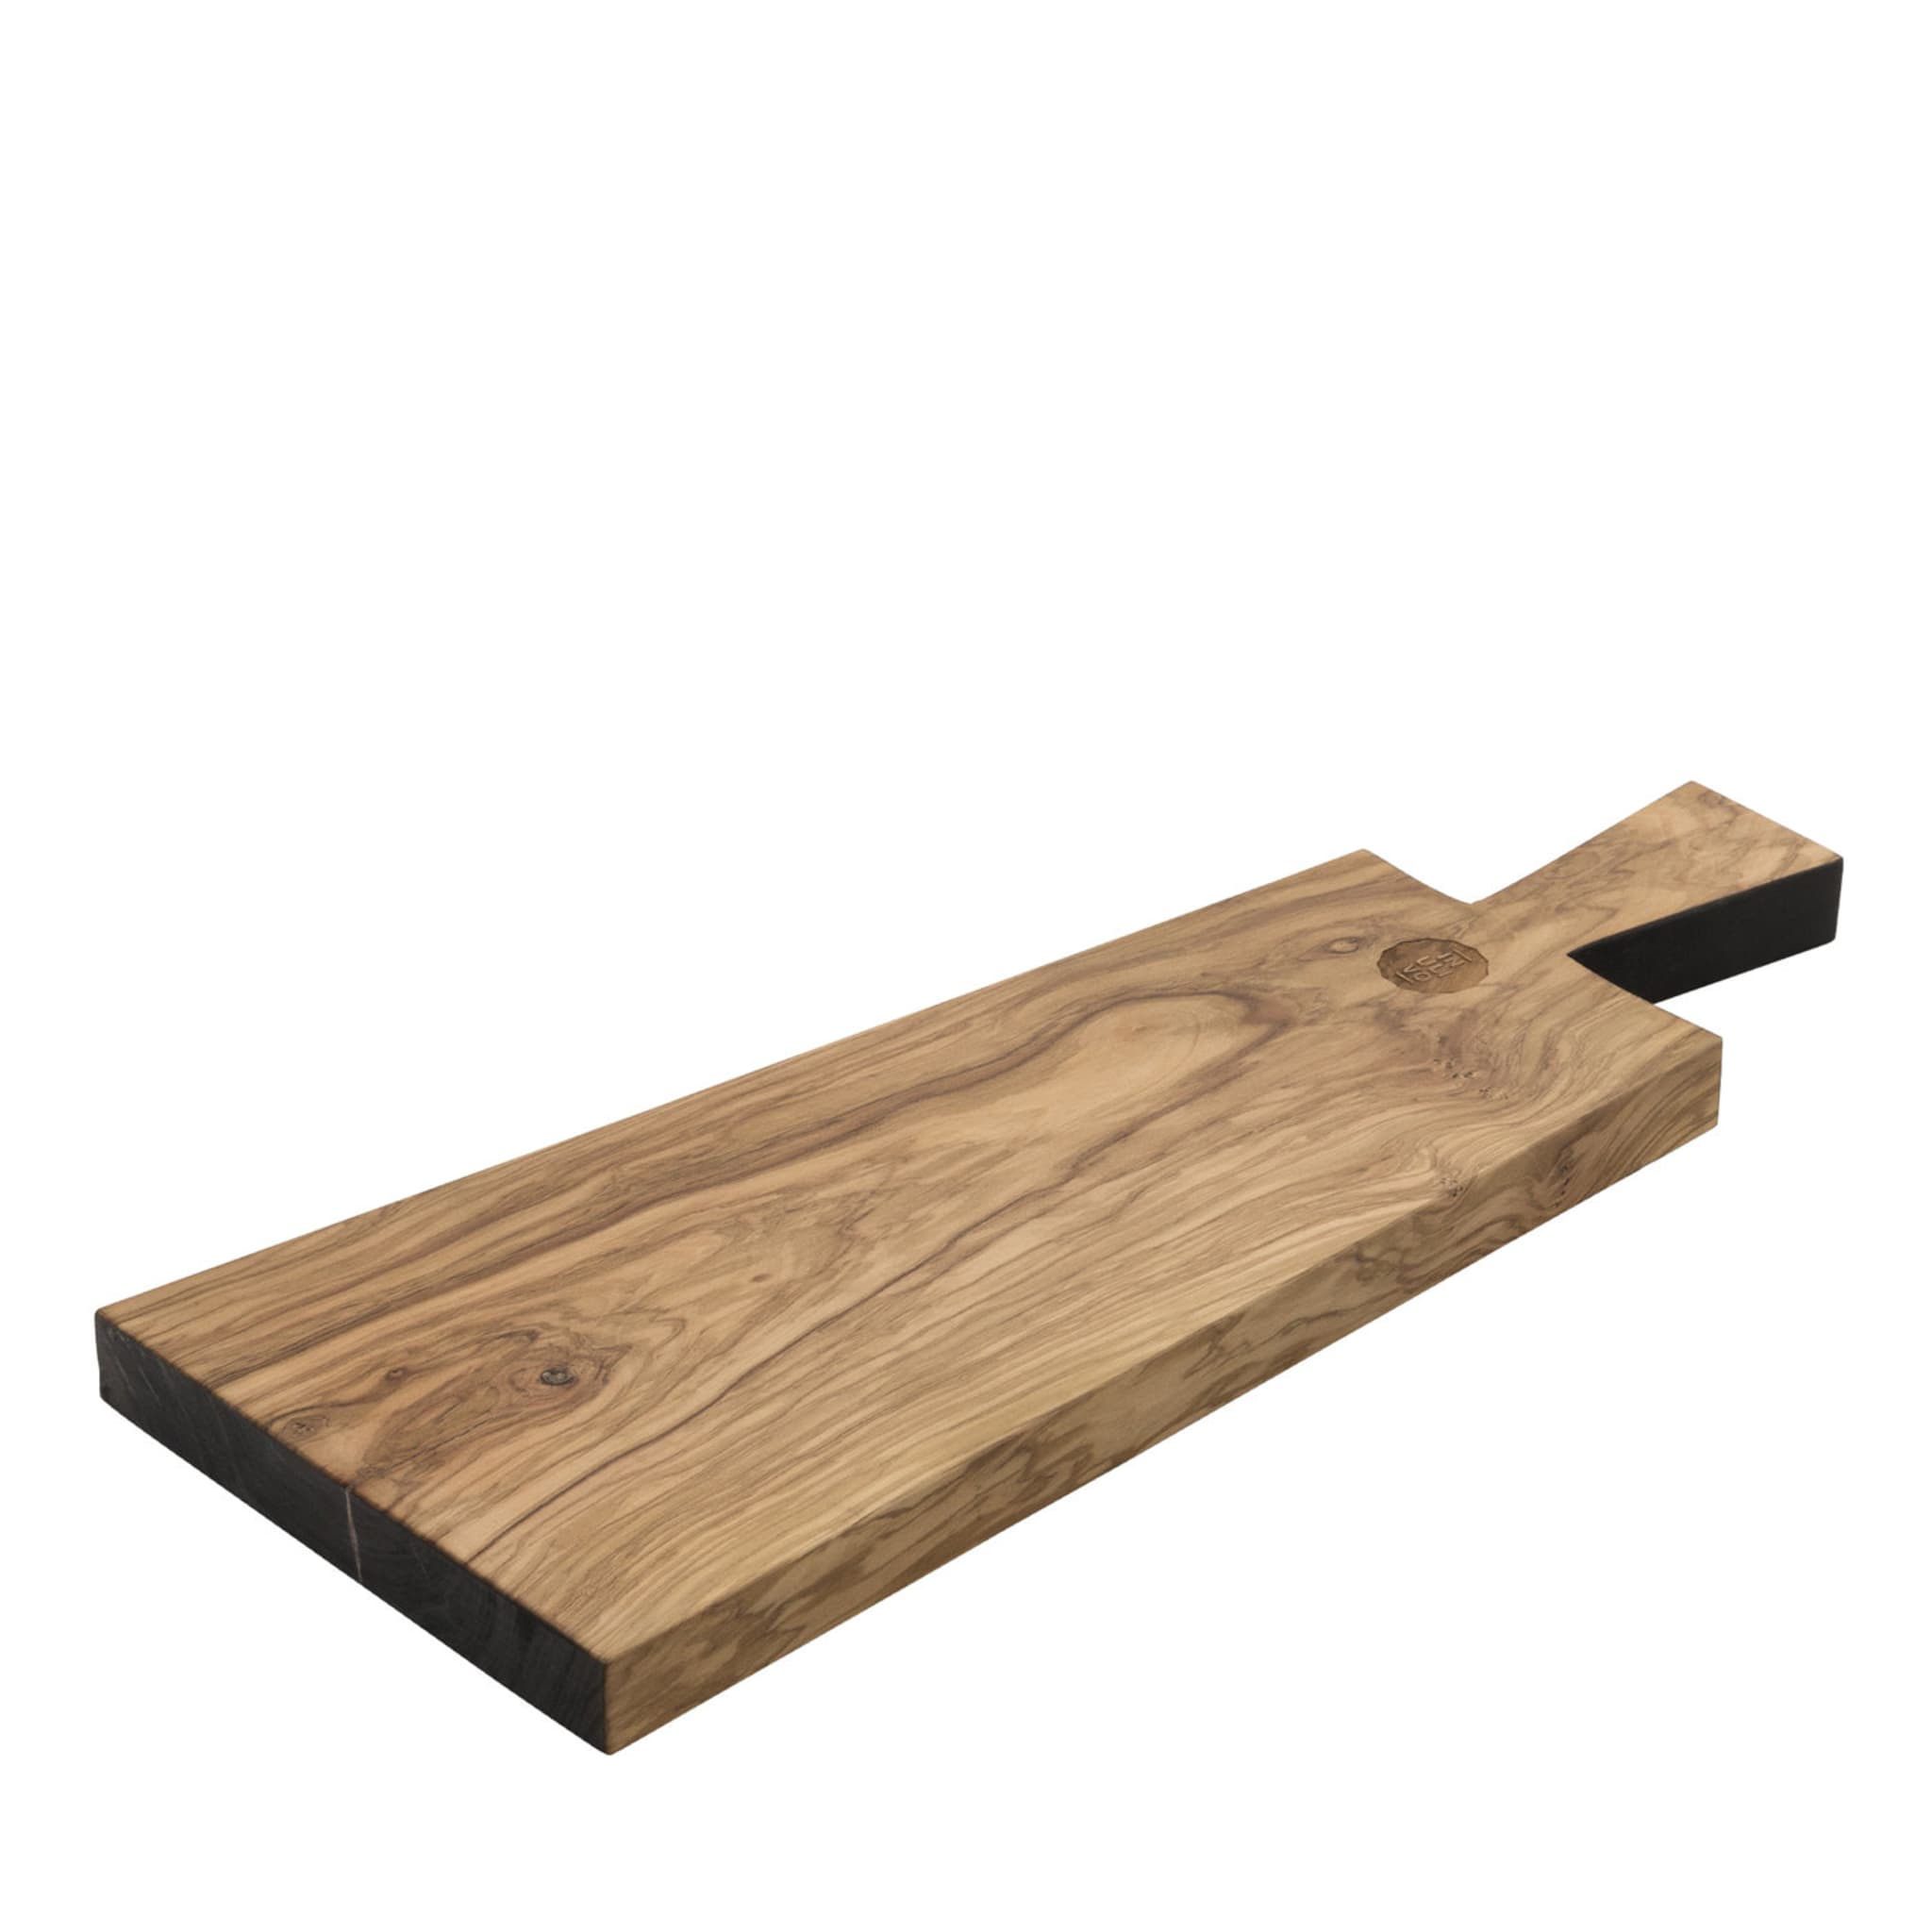 Inulivo Long Wood Chopping Board - Main view